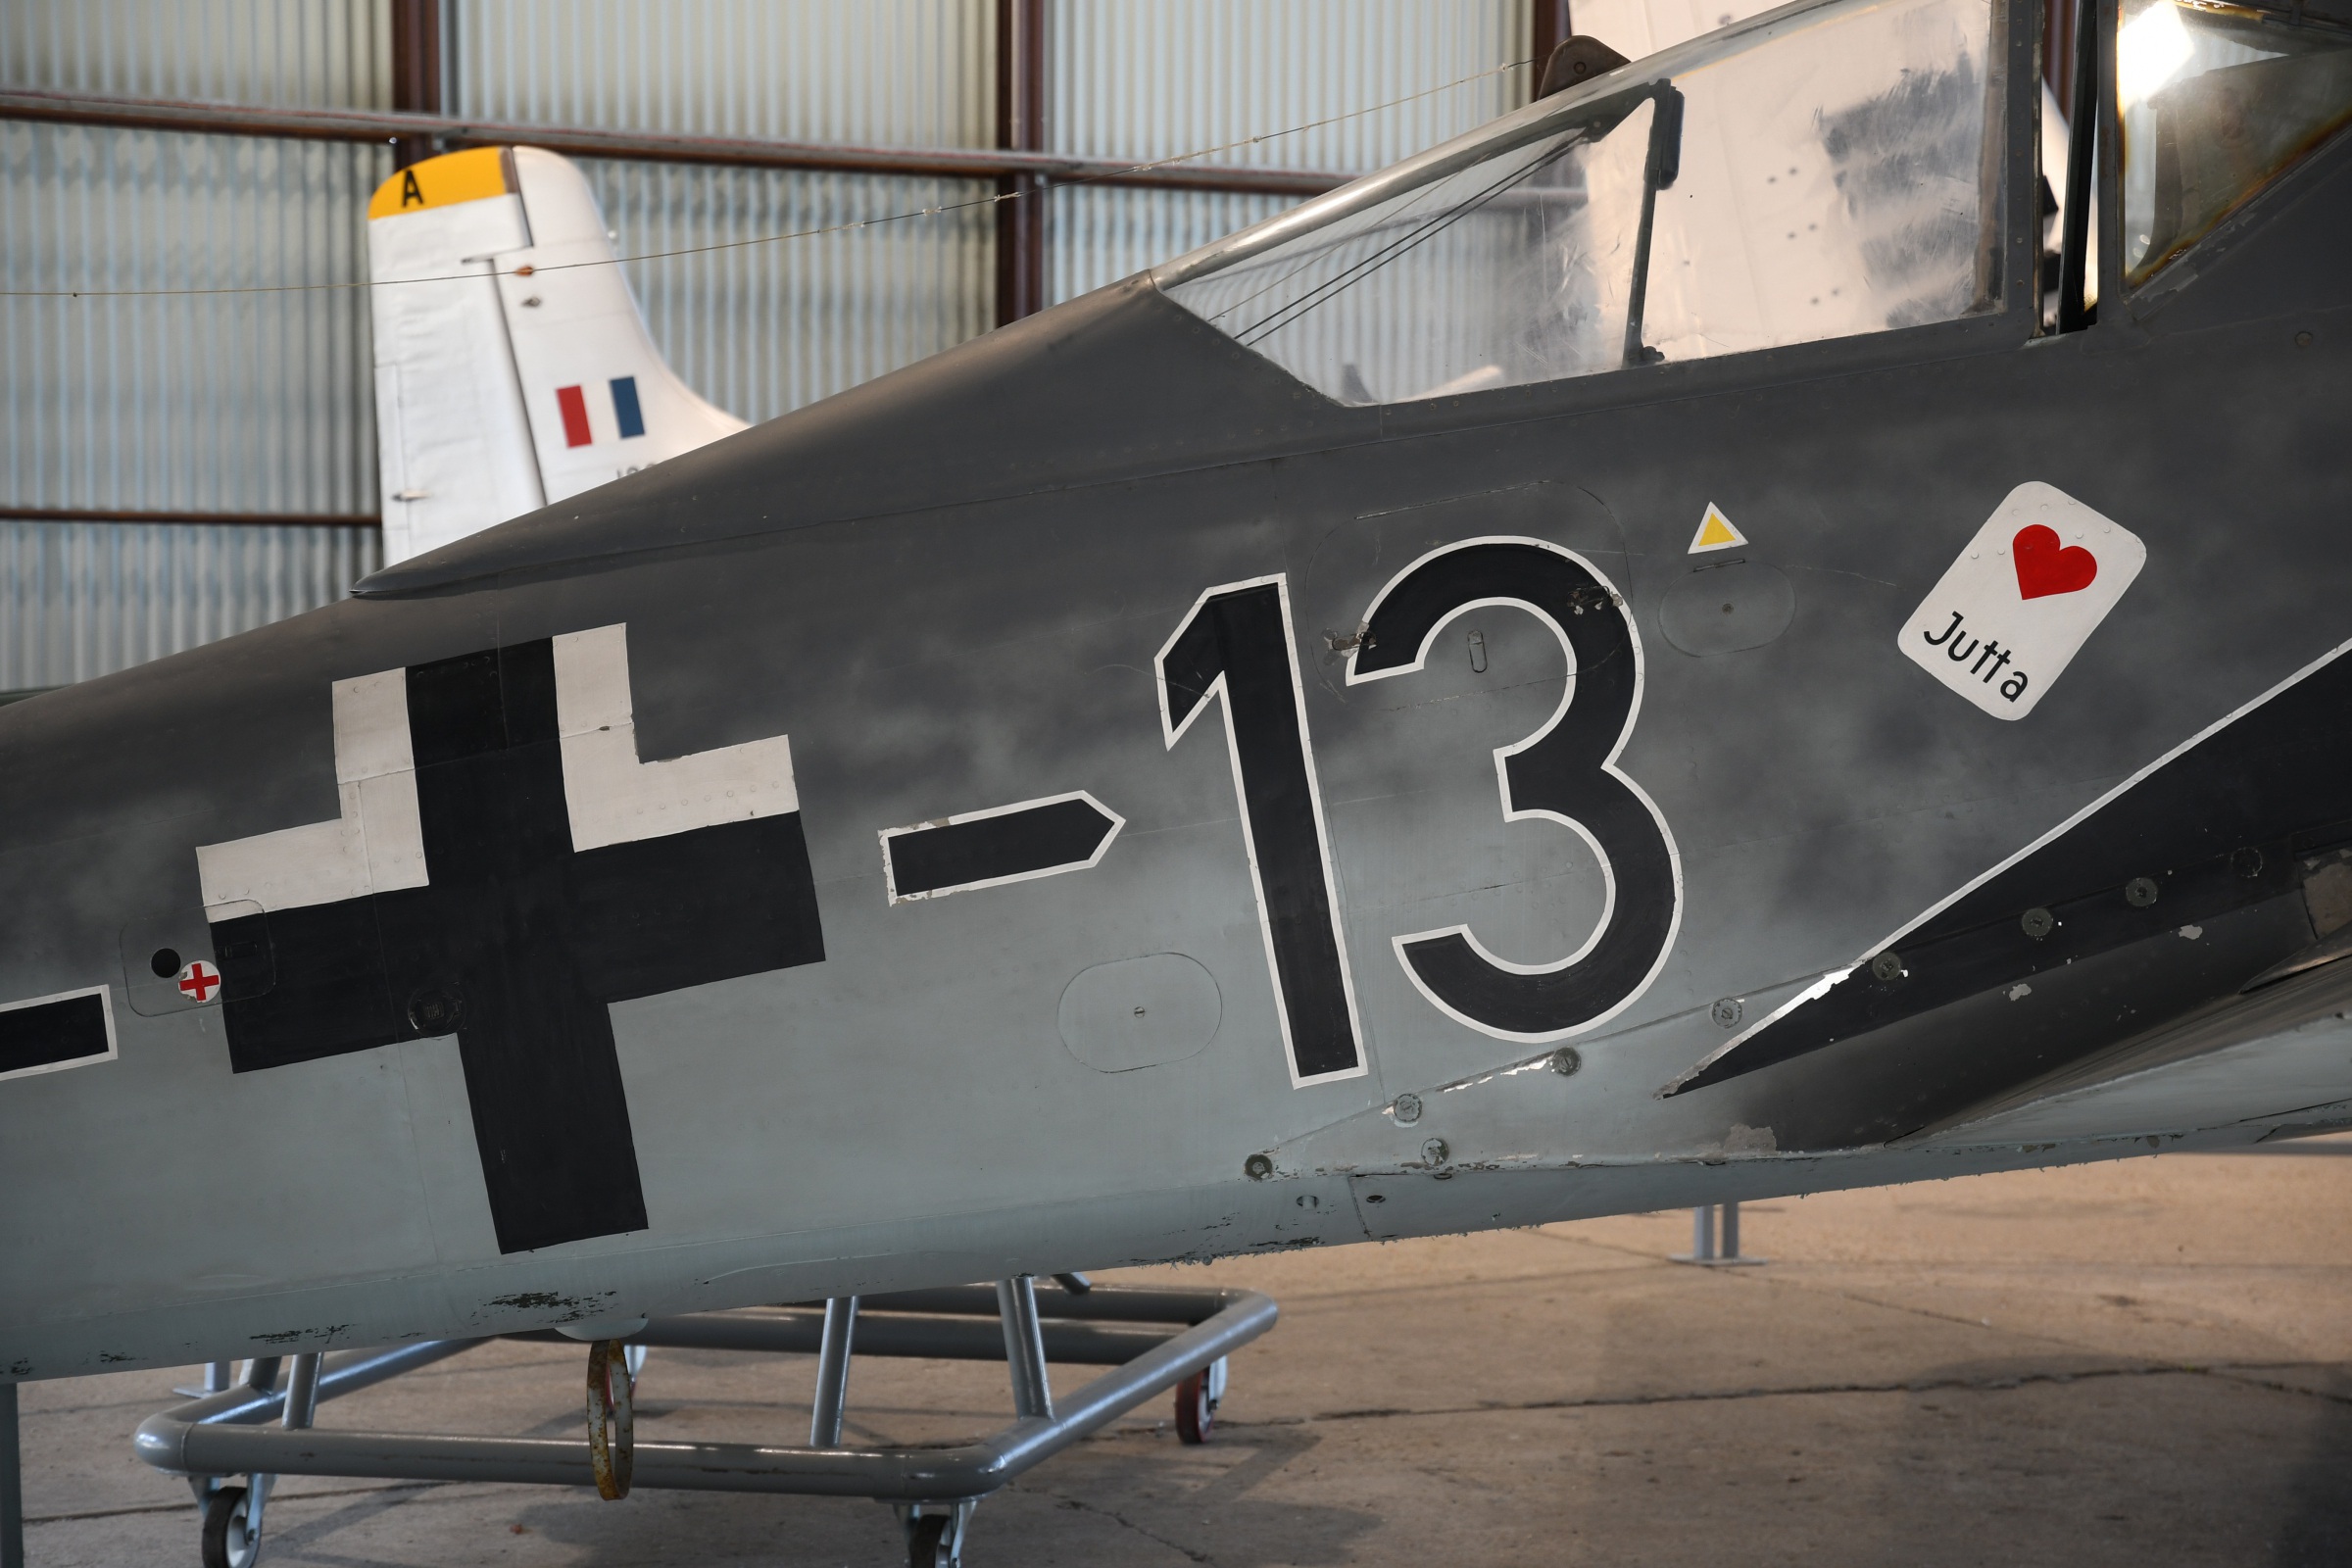 Fw 190A-8